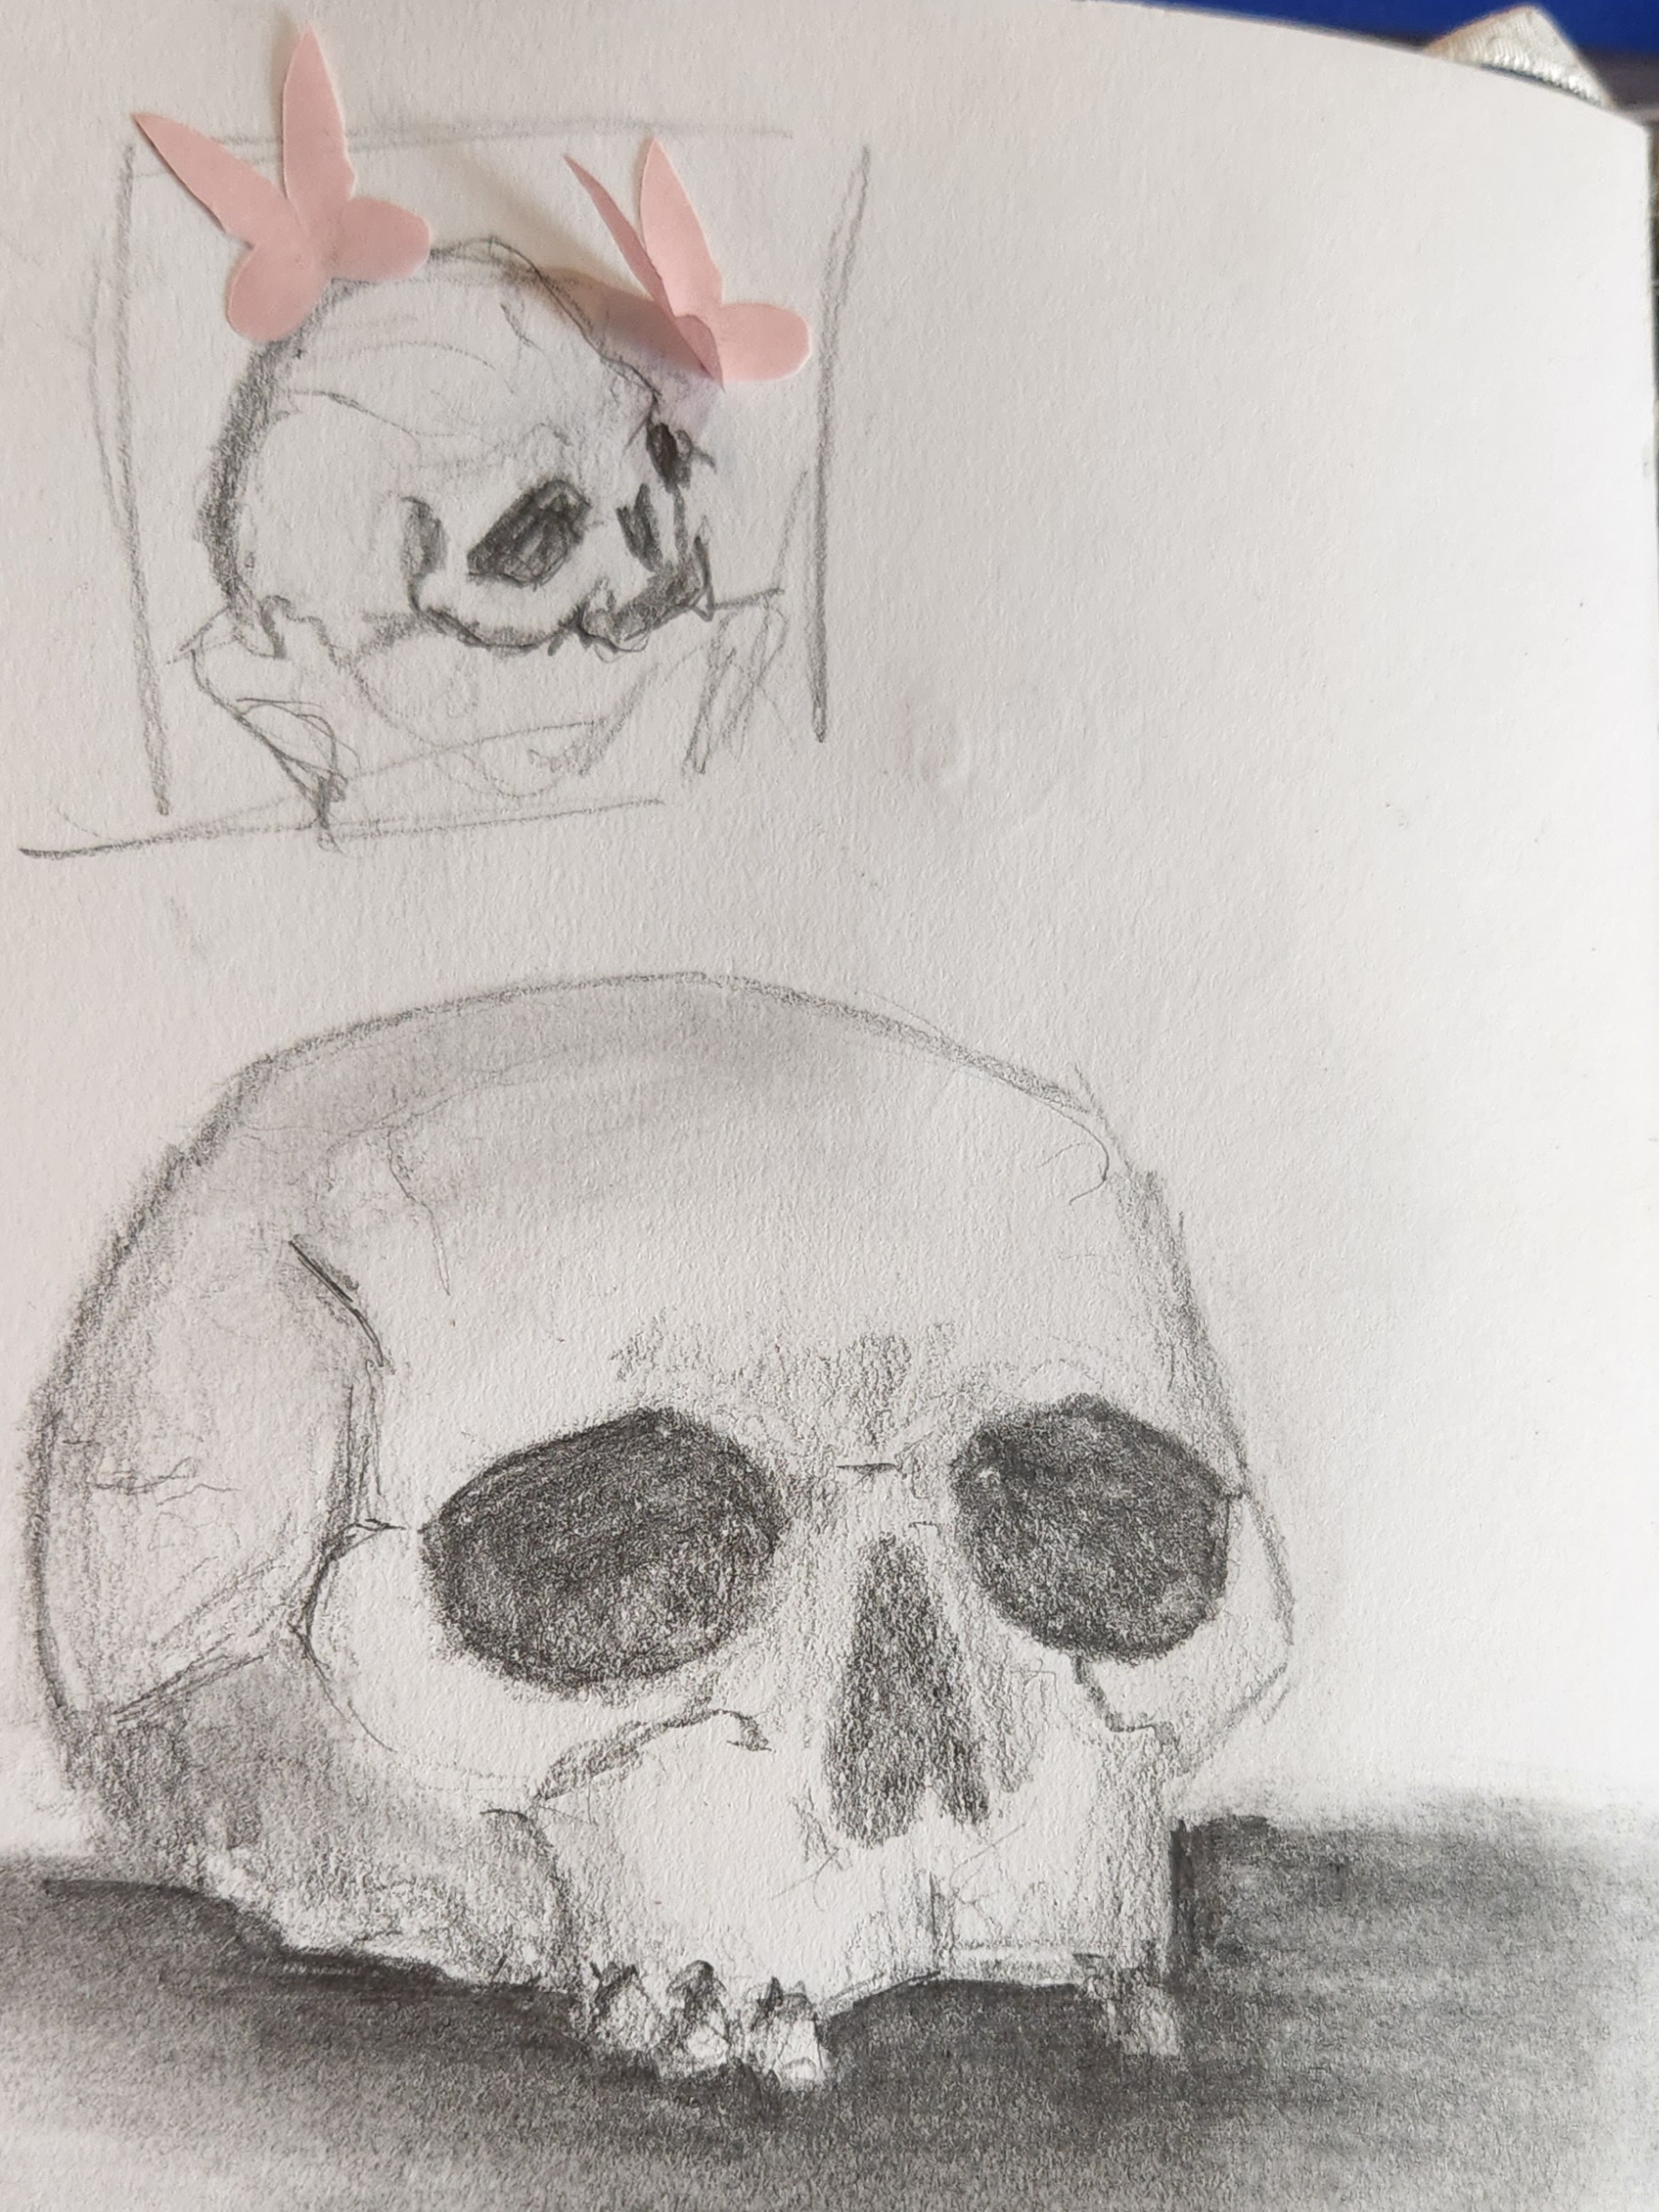 skull sketch